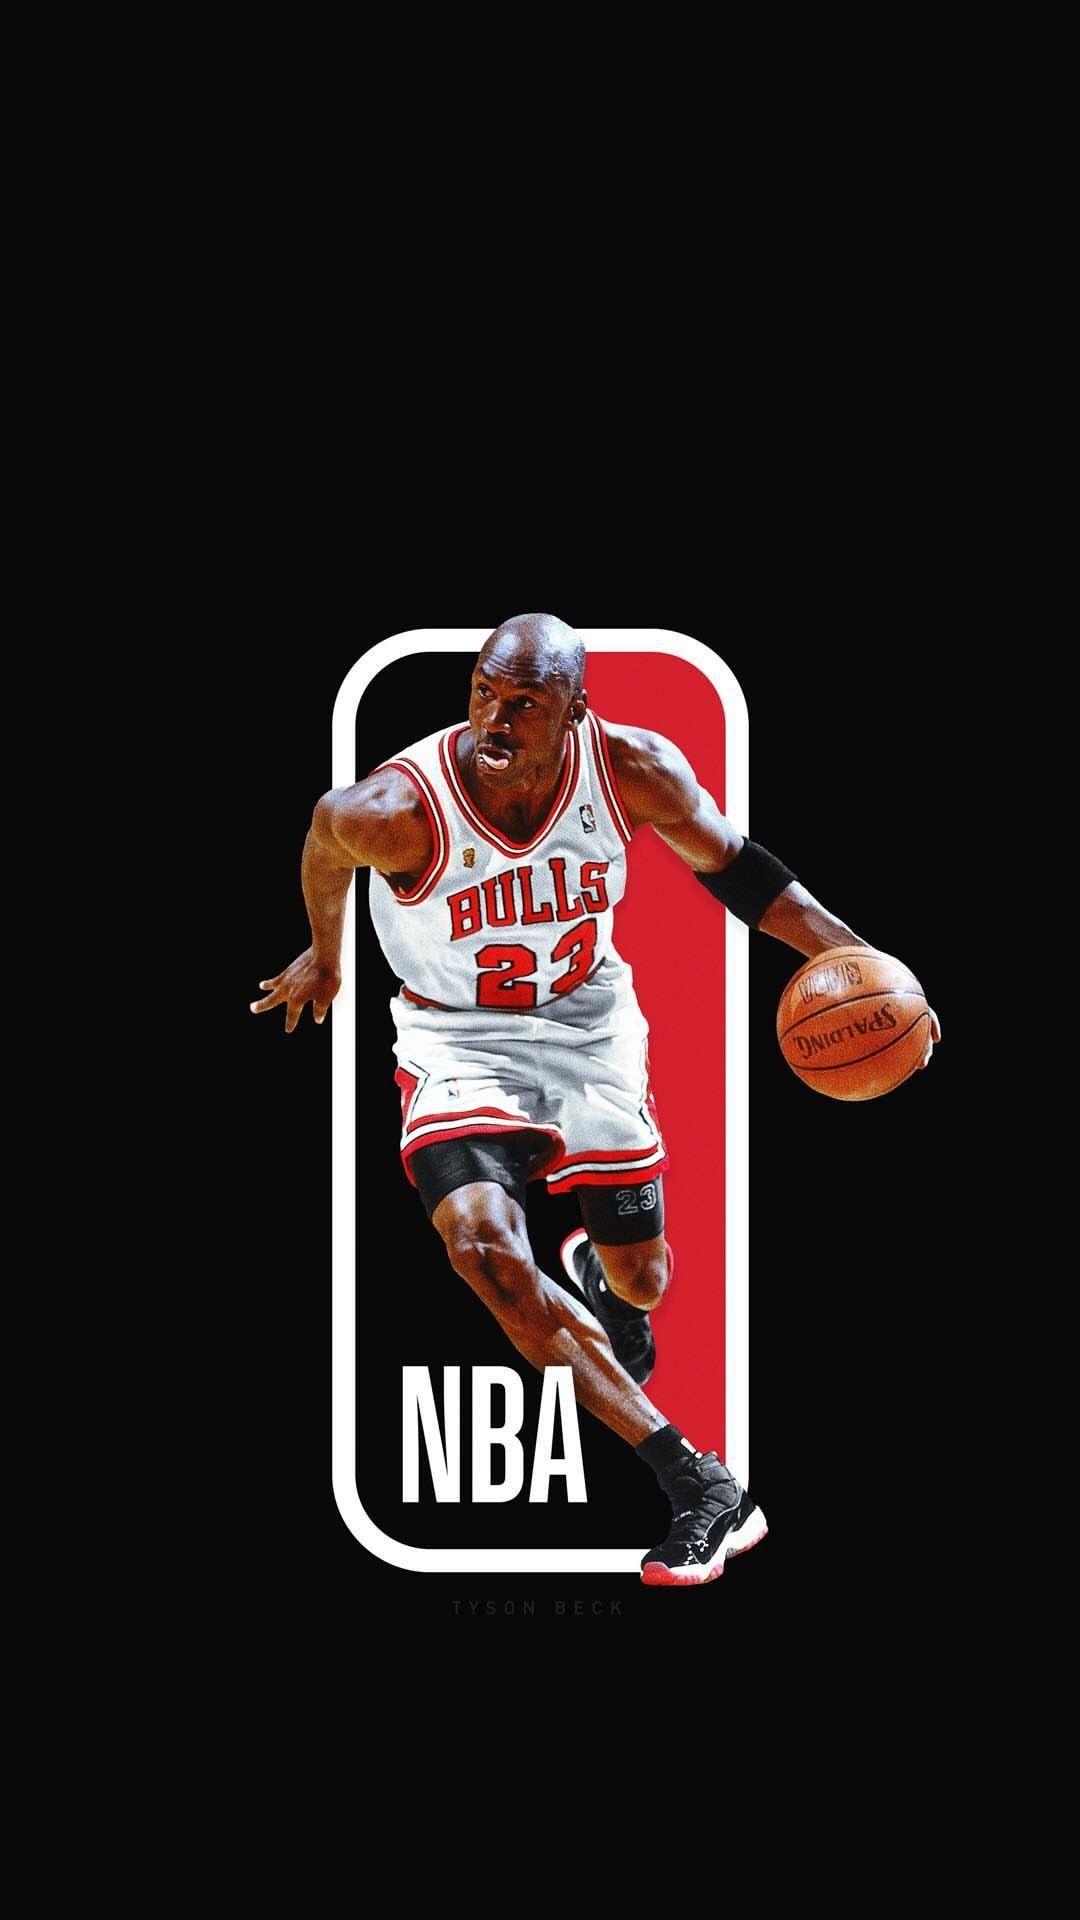 Nba michael jordan chicago bulls basketball wallpaper  1920x1080  85381   WallpaperUP